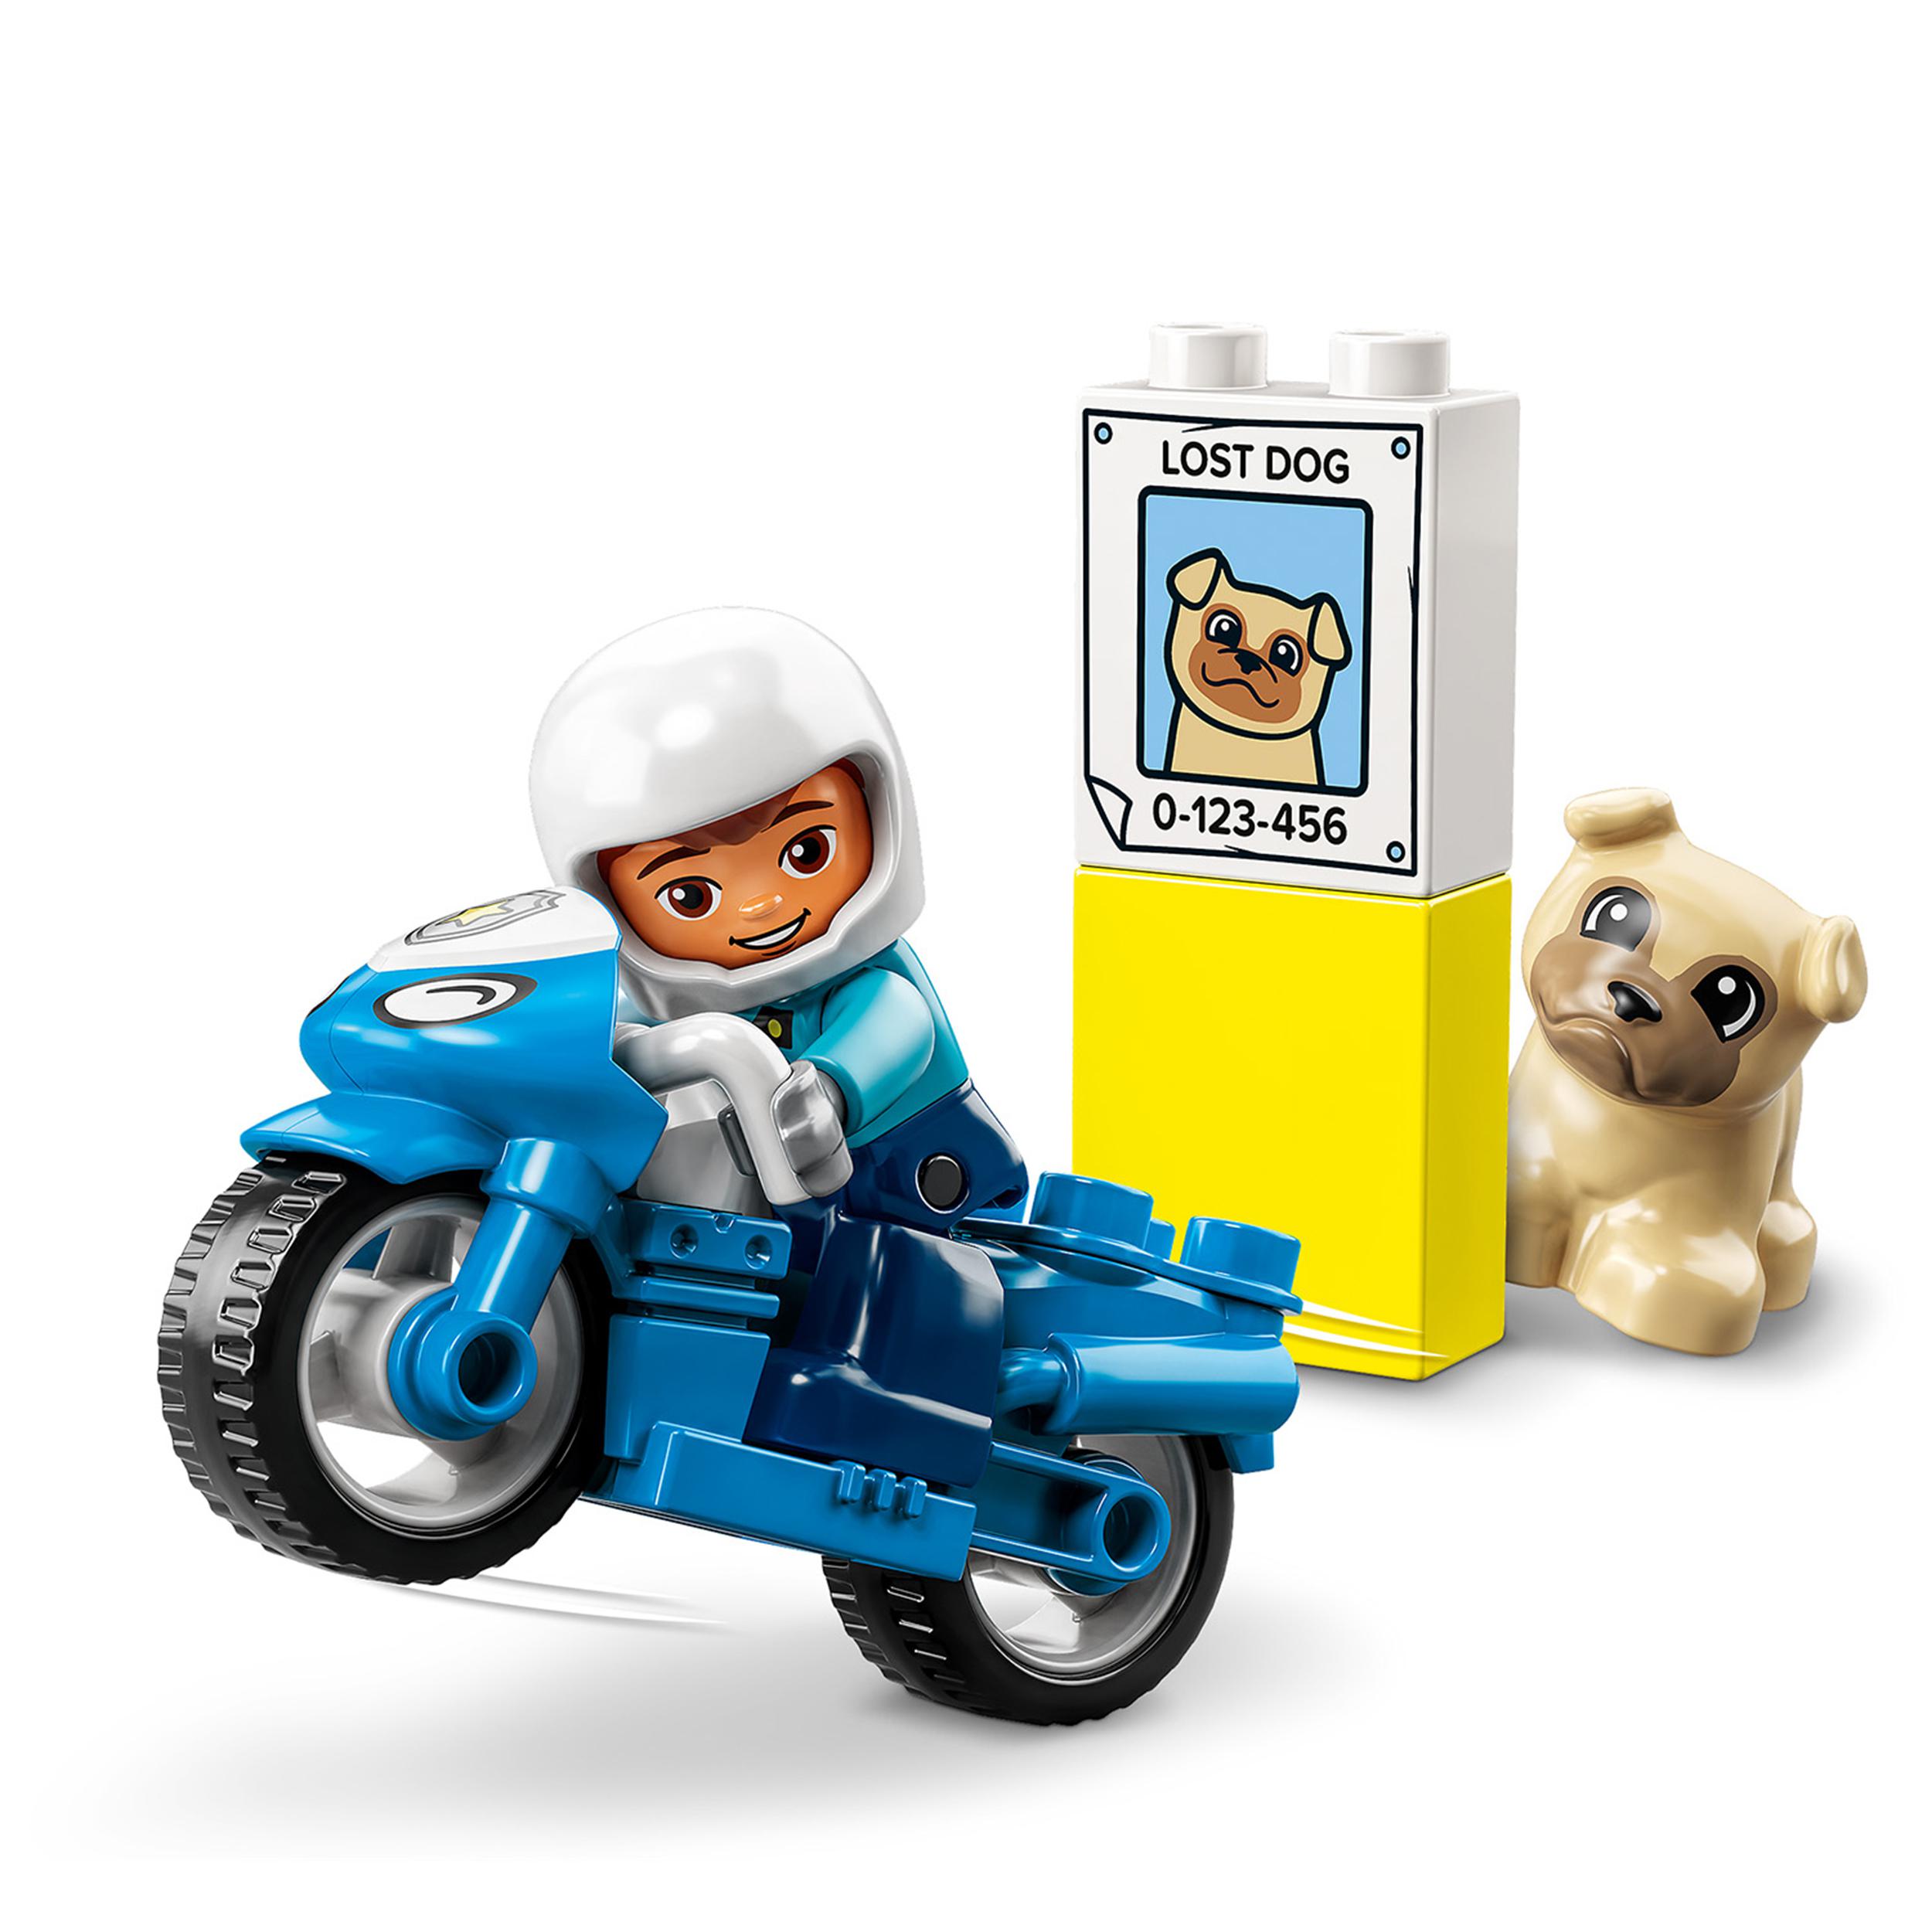 Lego duplo 10967 motocicletta della polizia, moto giocattolo per bambini di 2+ anni, giochi creativi ed educativi - LEGO DUPLO, Lego